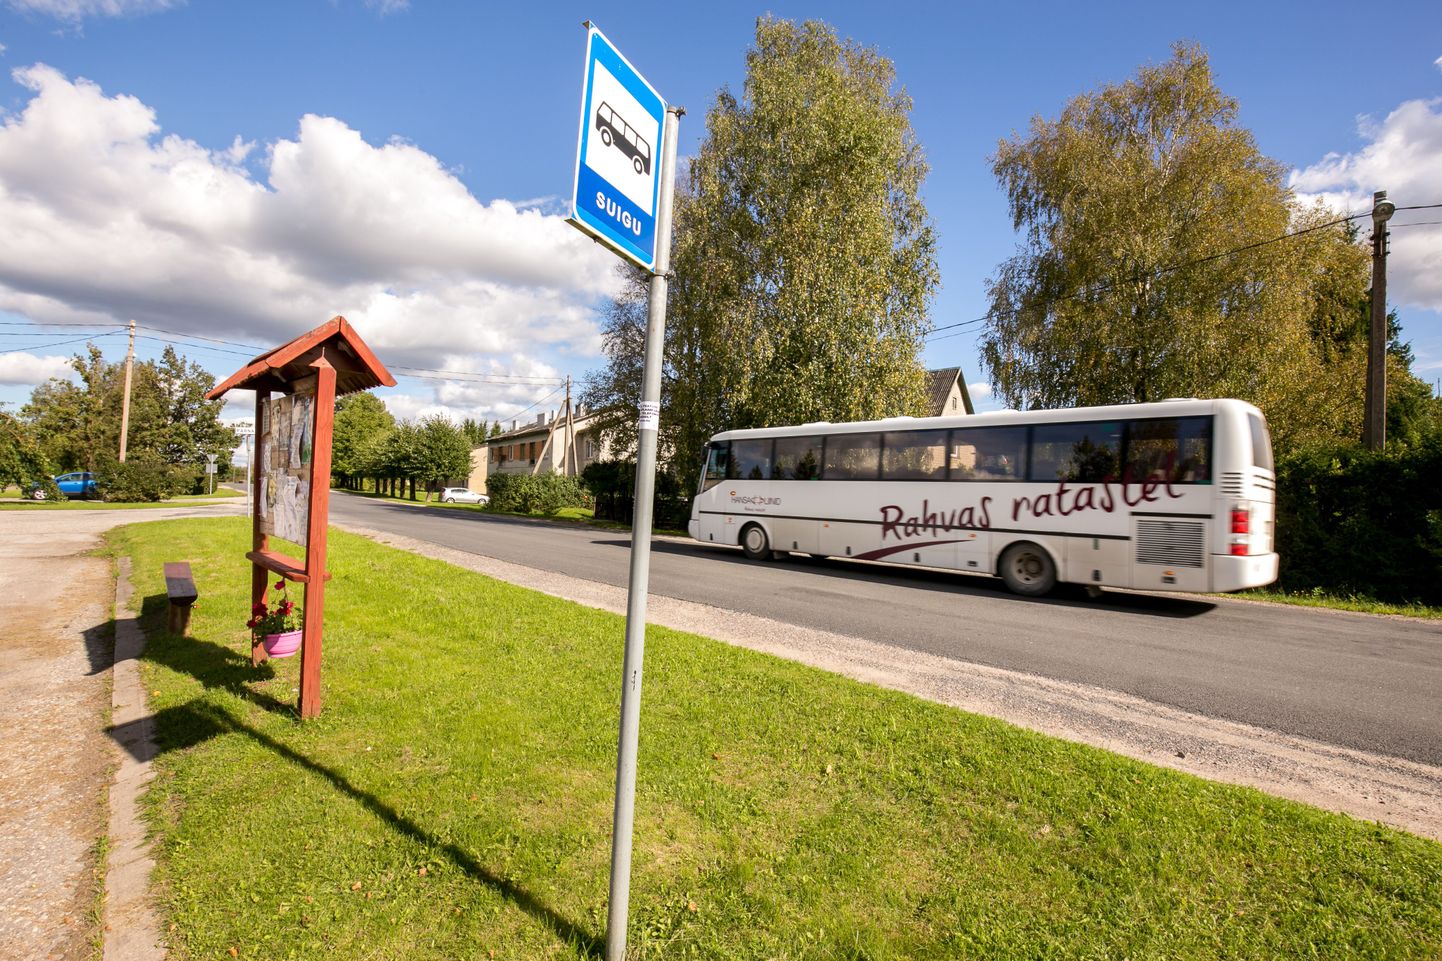 Augusti esimesest päevast läksid Pärnu maabussid linna ühissõidukite kombel üle uue piletisüsteemi kassaaparaatidele.